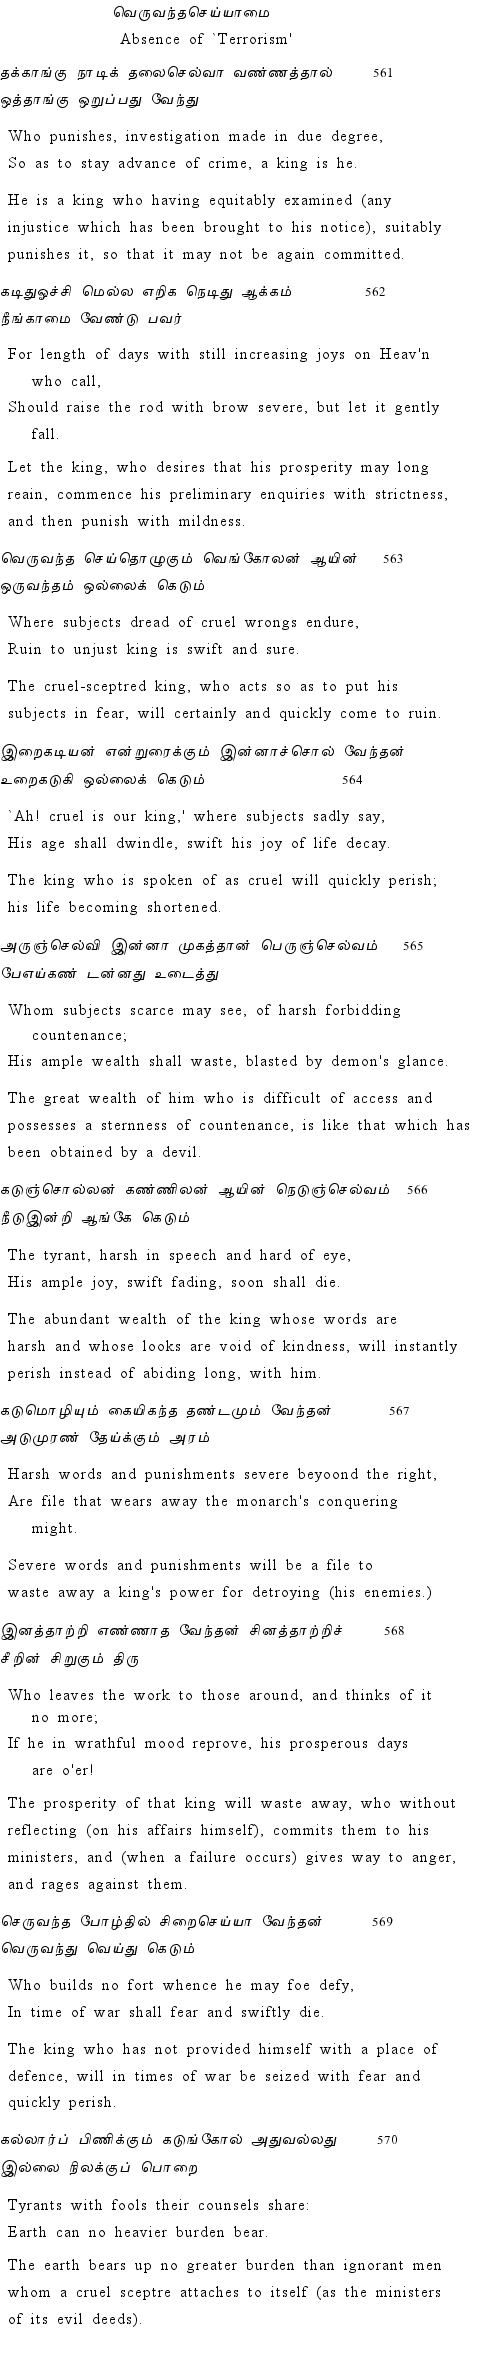 Text of Adhikaram 57